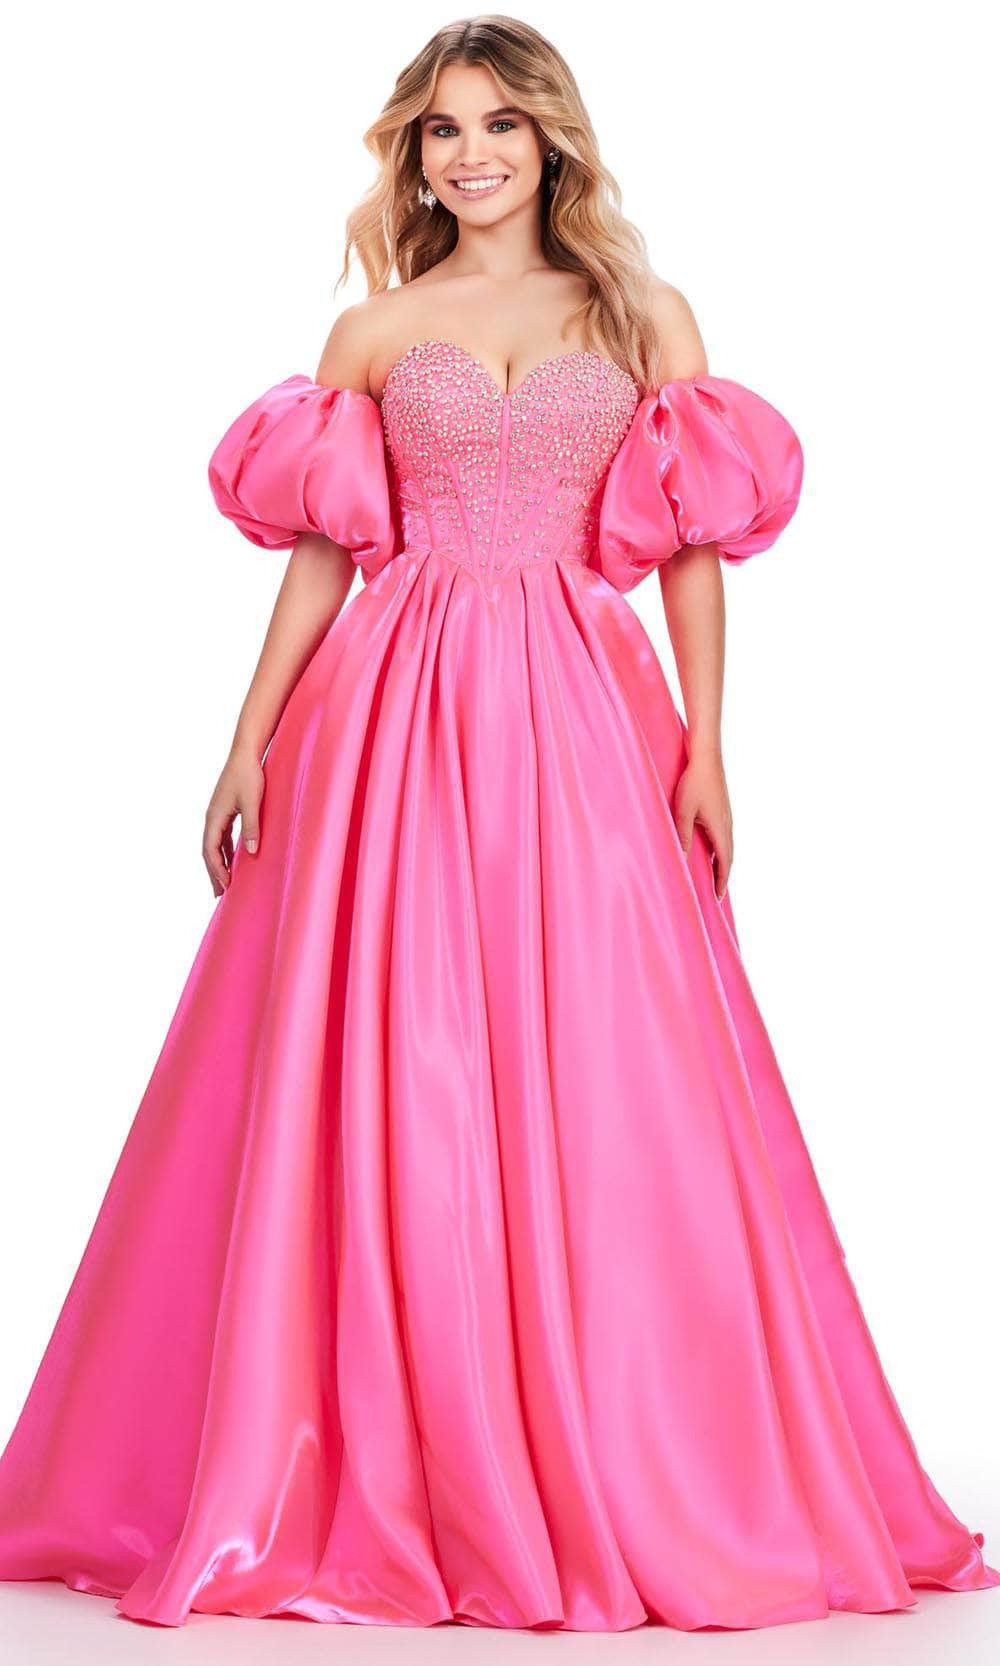 Image of Ashley Lauren 11642 - Jeweled Satin Prom Dress